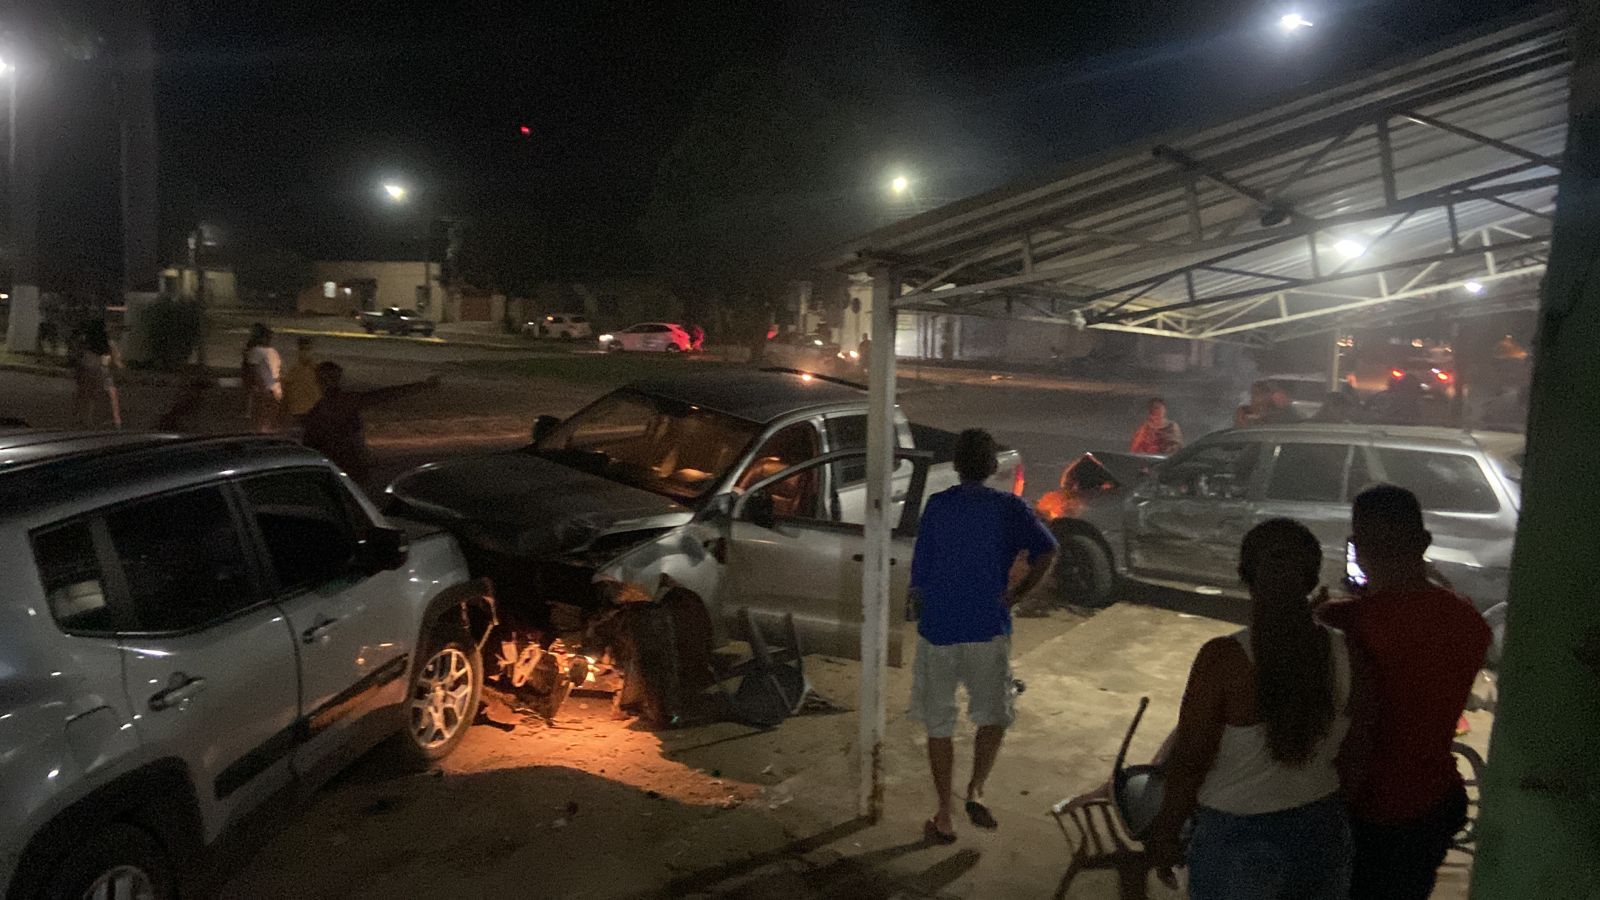 Vídeo: motorista invade contramão, atropela motociclista e atinge dois carros, em Goiás